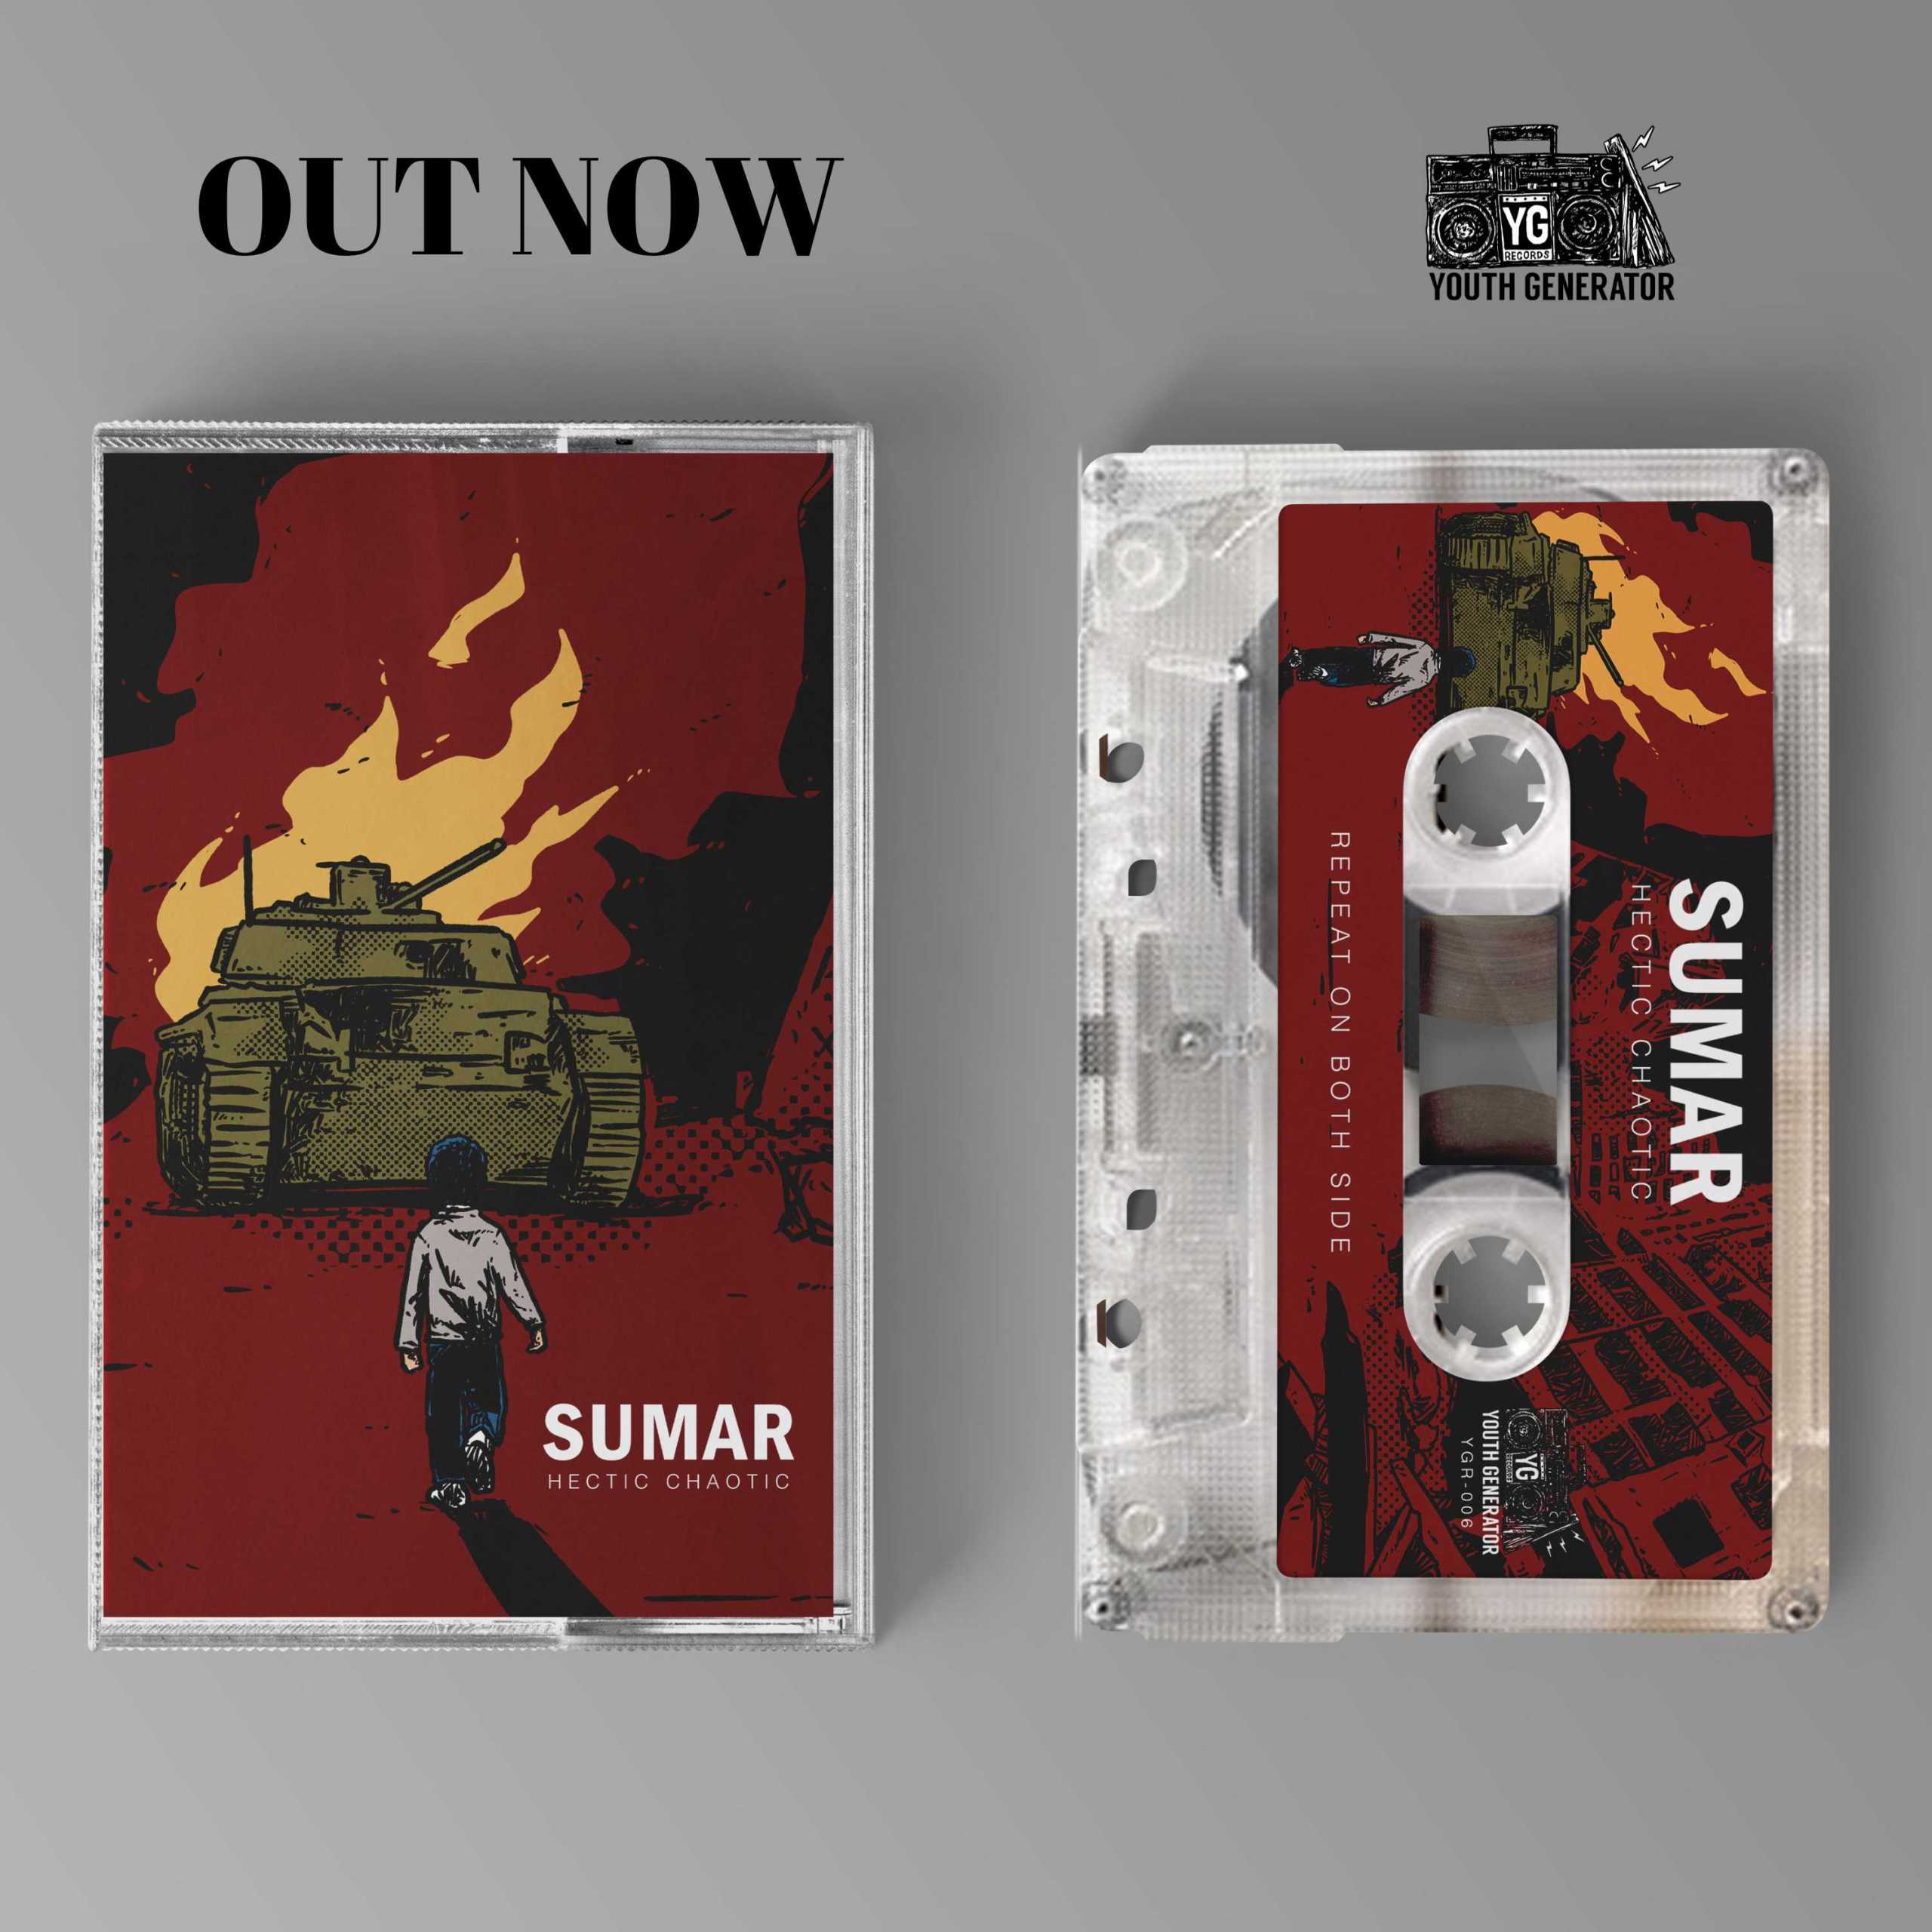 Sumar Miliki album “Hectic Chaotic” dengan Bangkit dan Ditindas